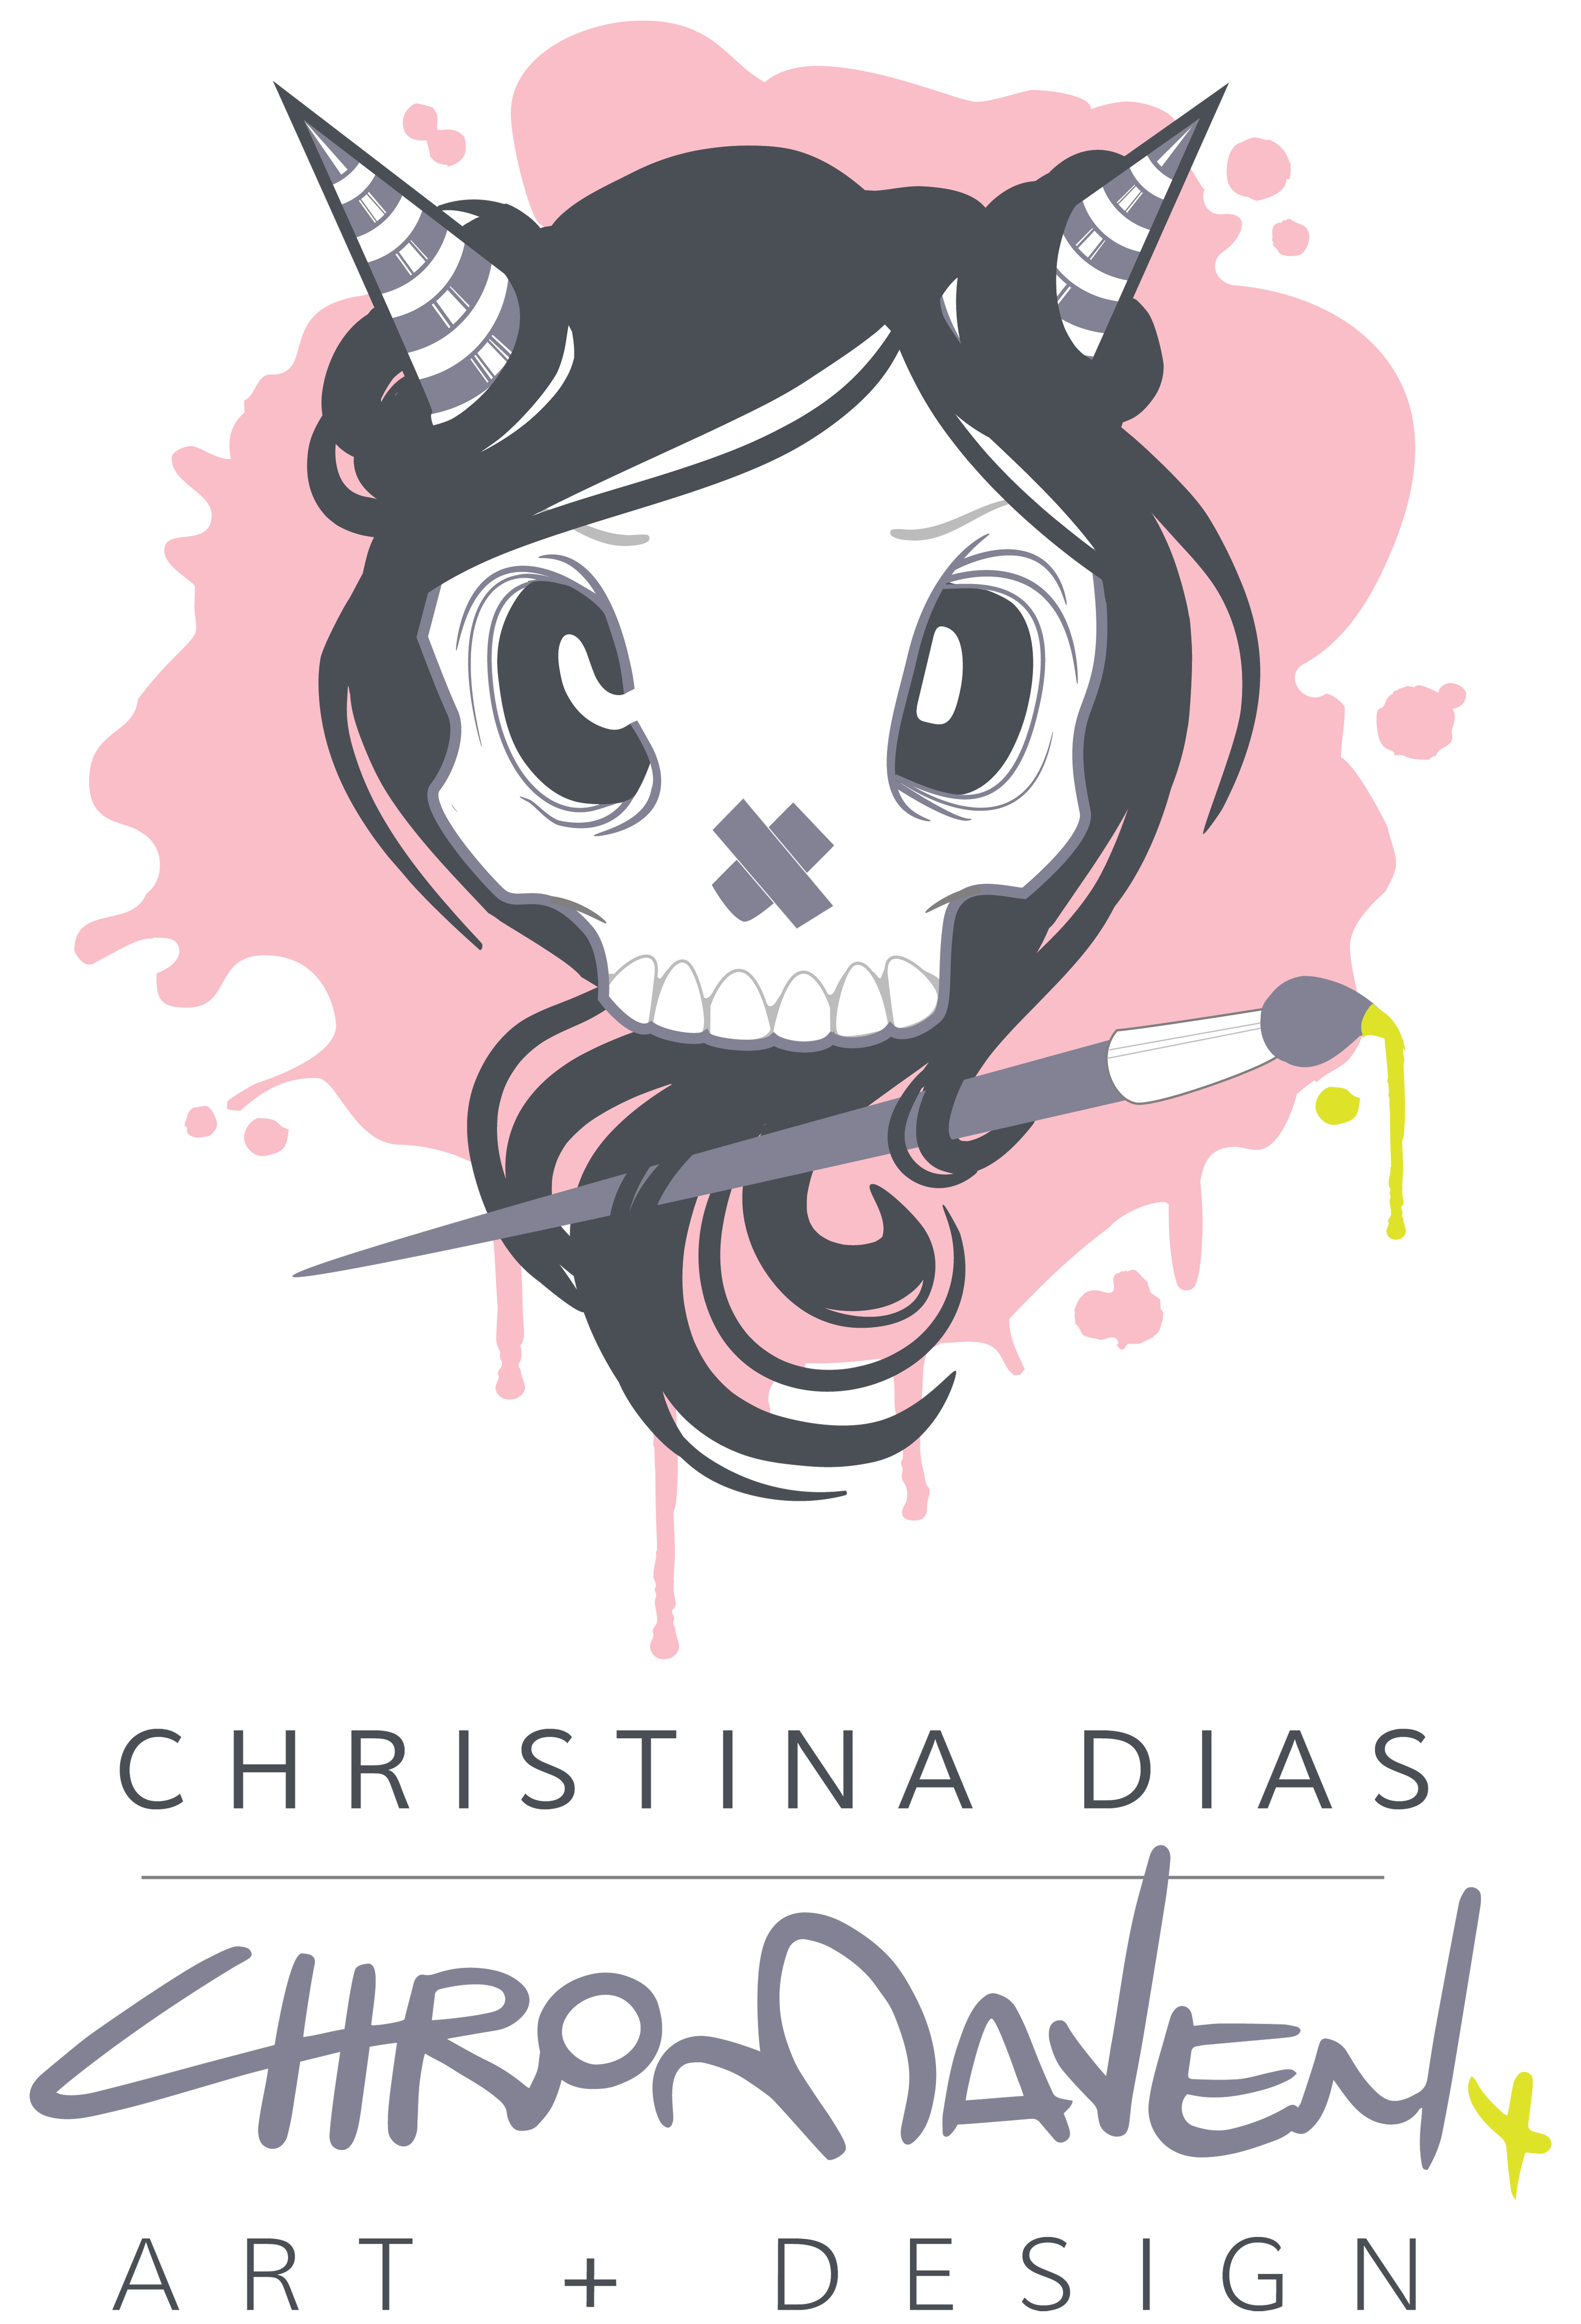 Christina Dias